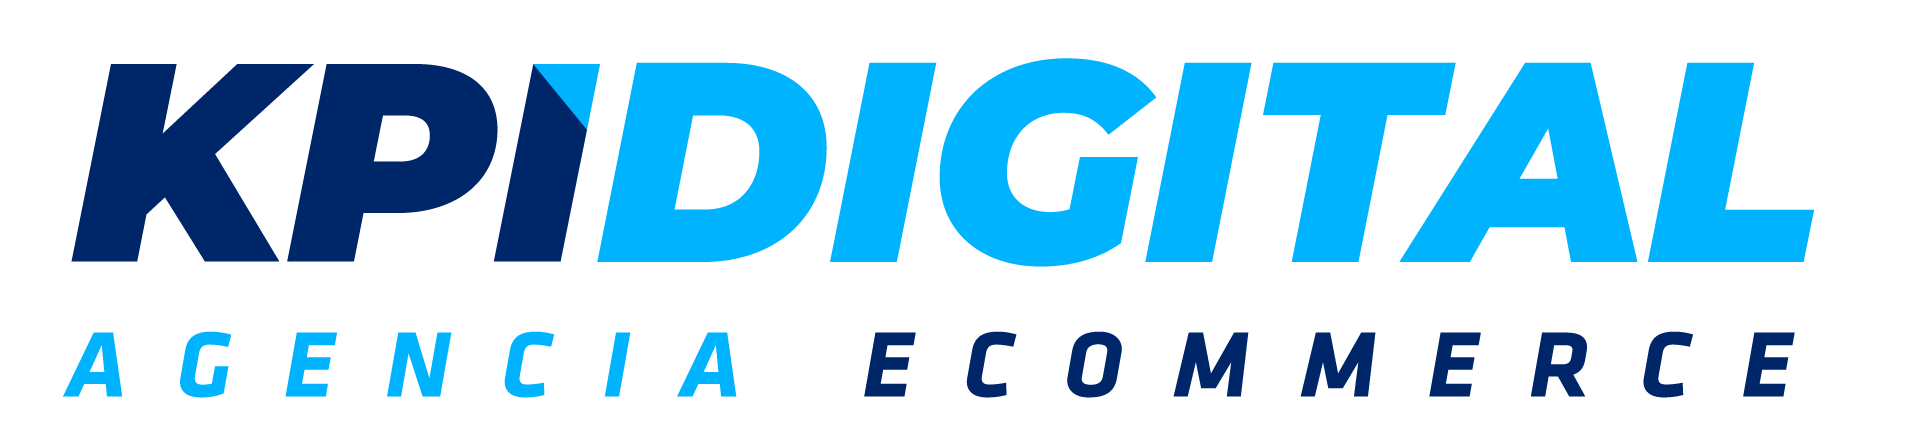 KPI Digital Ecuador